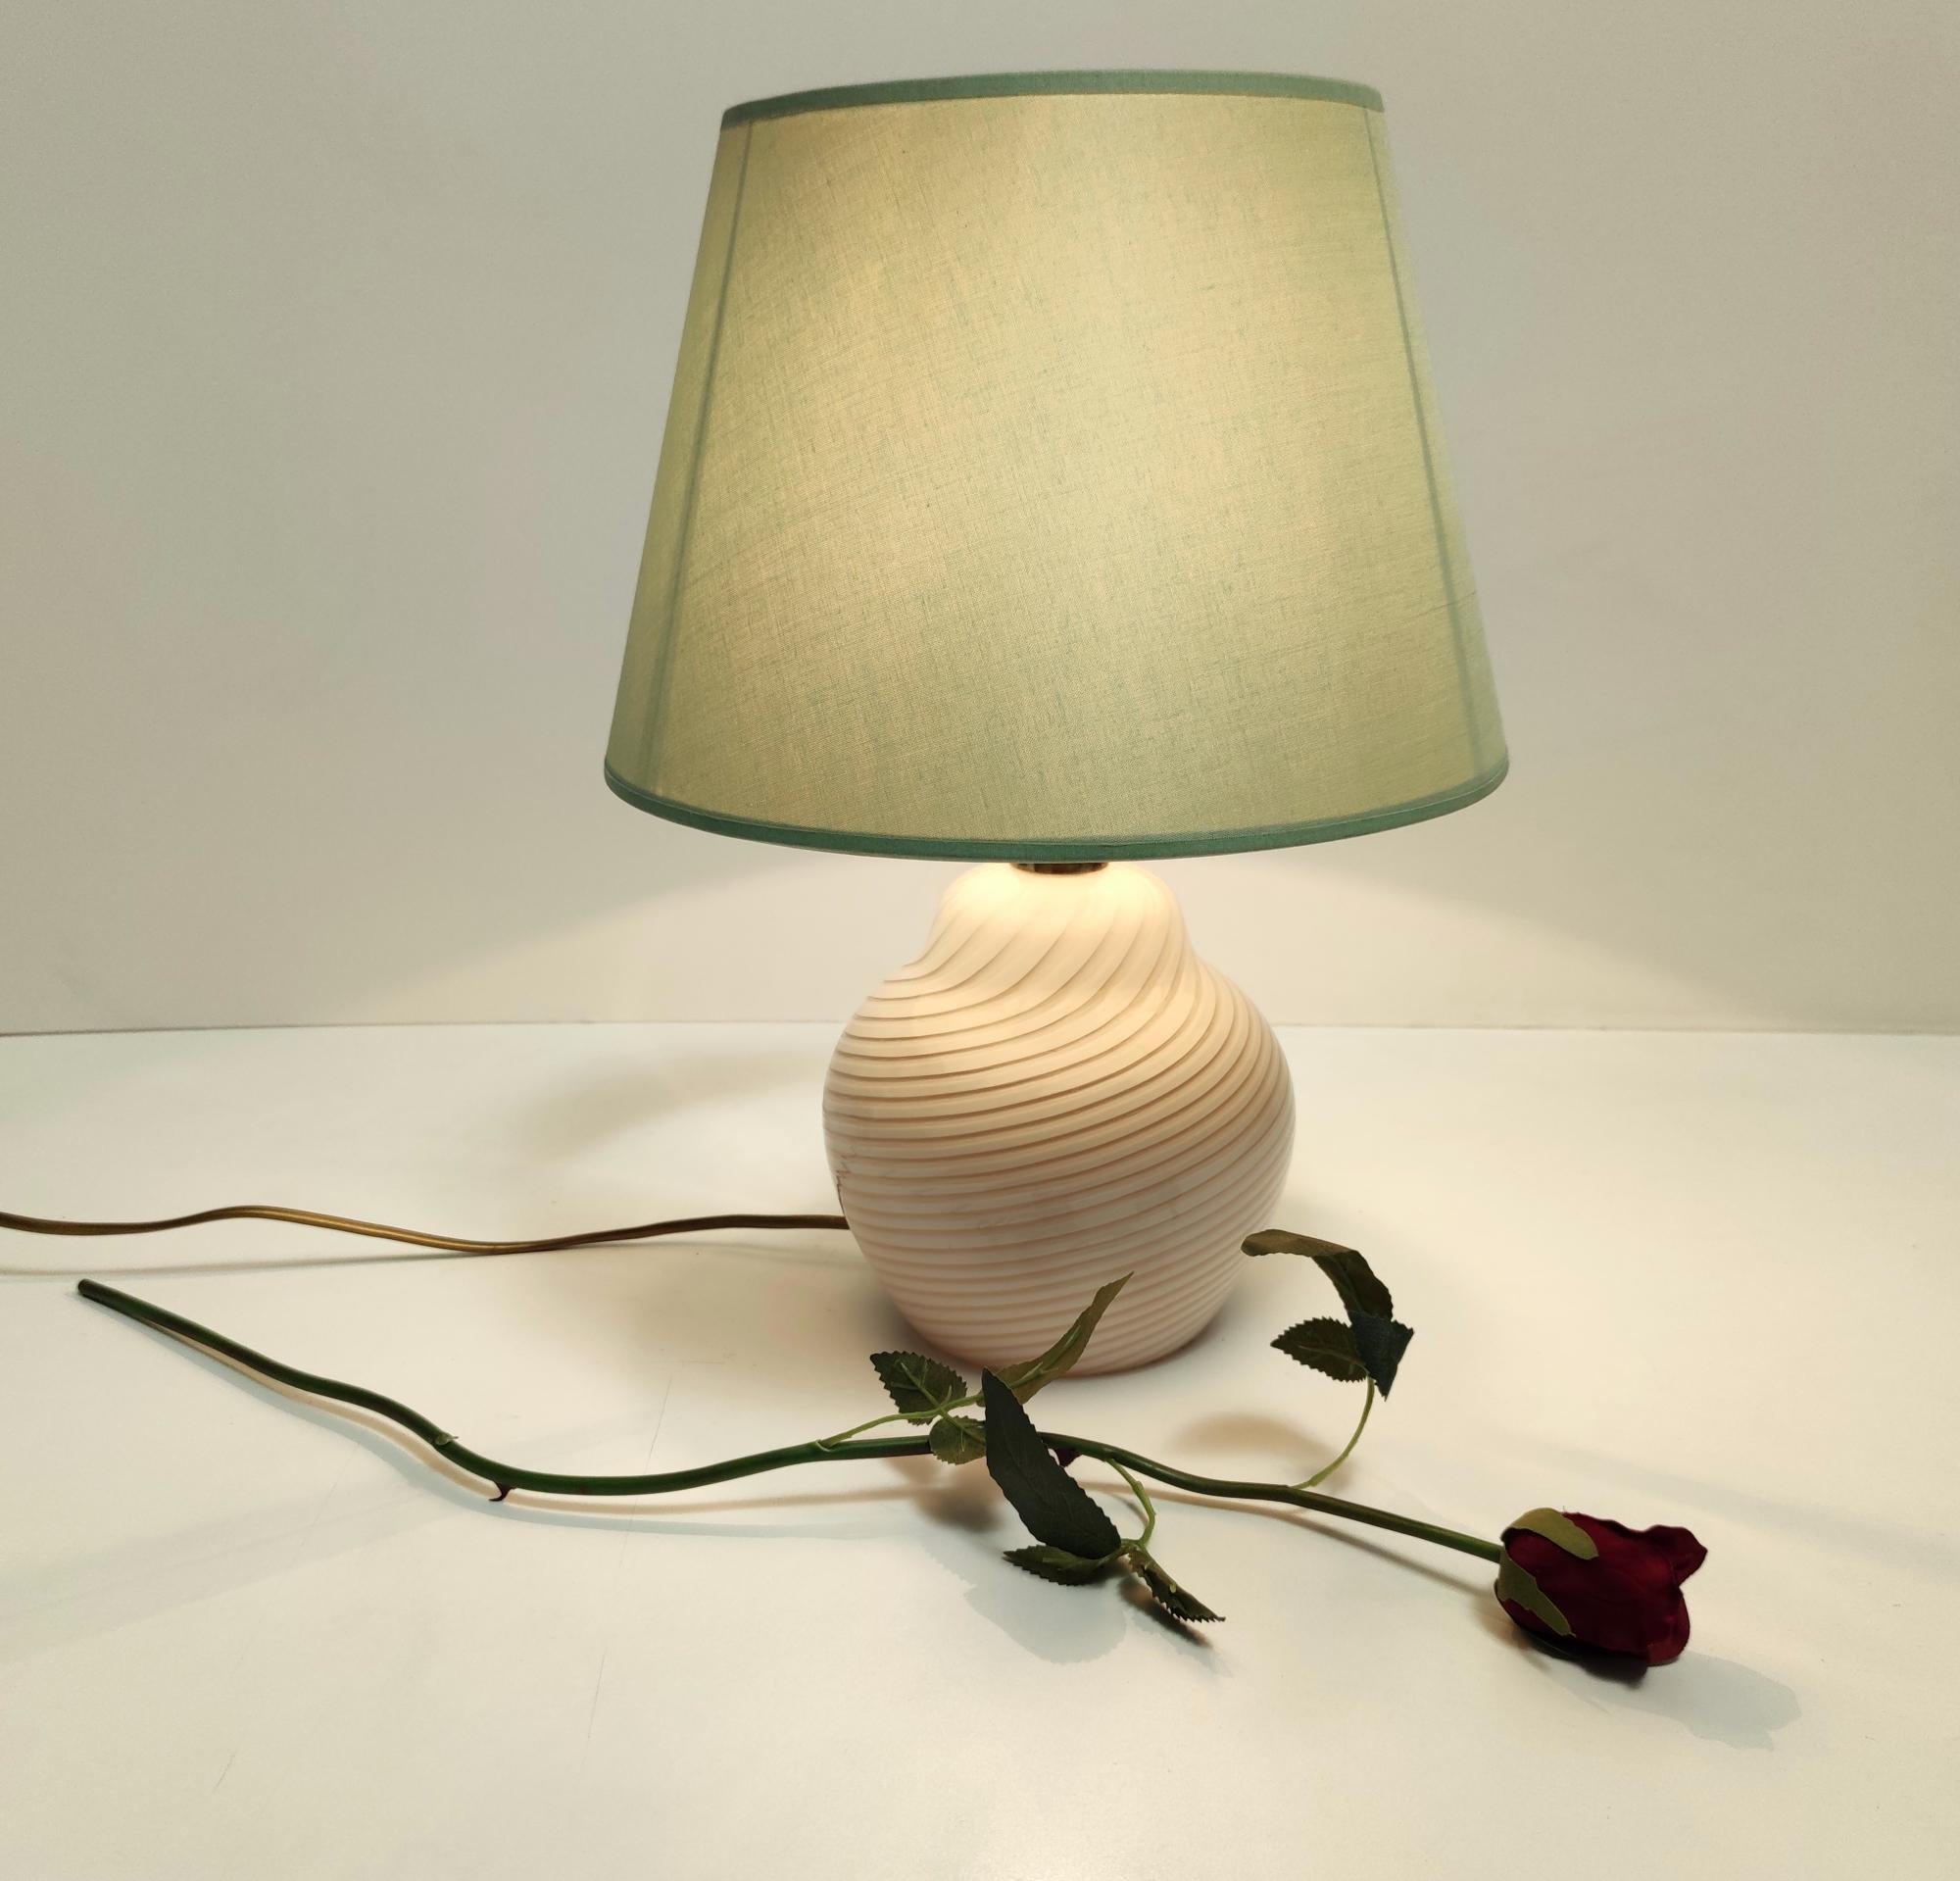 Fabriqué en Italie, années 1980. 
Whiting se compose d'une base en verre de Murano blanc et rose et d'un abat-jour en tissu
Cette lampe peut présenter de légères traces d'utilisation puisqu'elle est vintage, mais elle peut être considérée comme